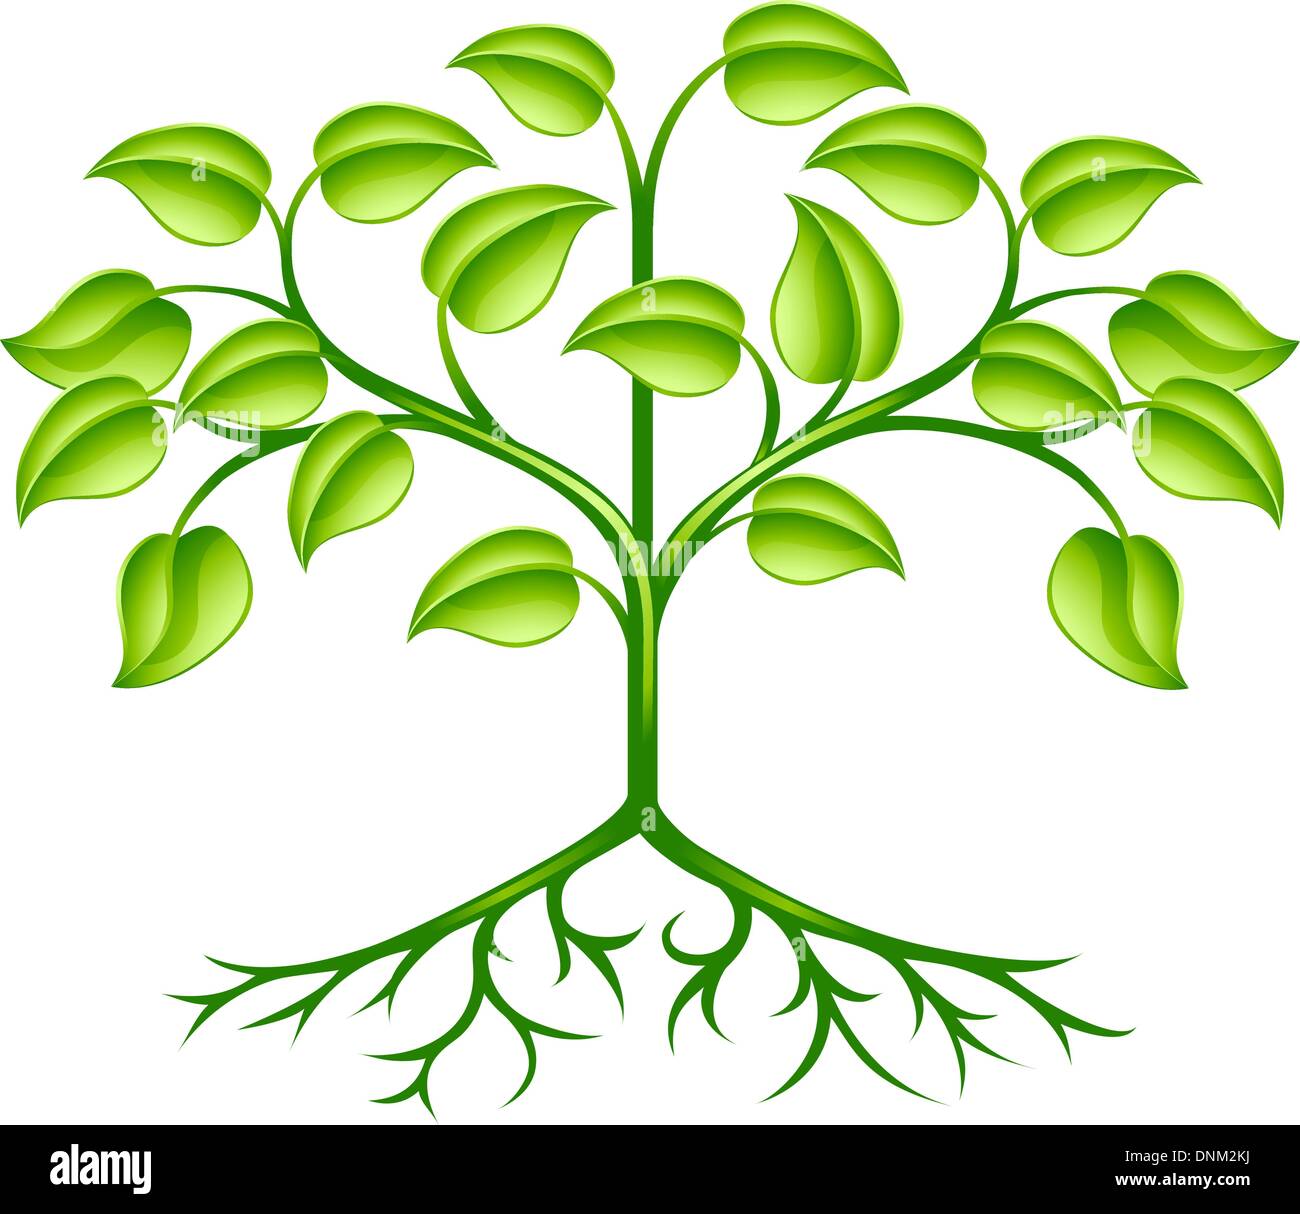 Un élément de design vert arbre stylisé symbolisant la croissance, la nature ou l'environnement Illustration de Vecteur